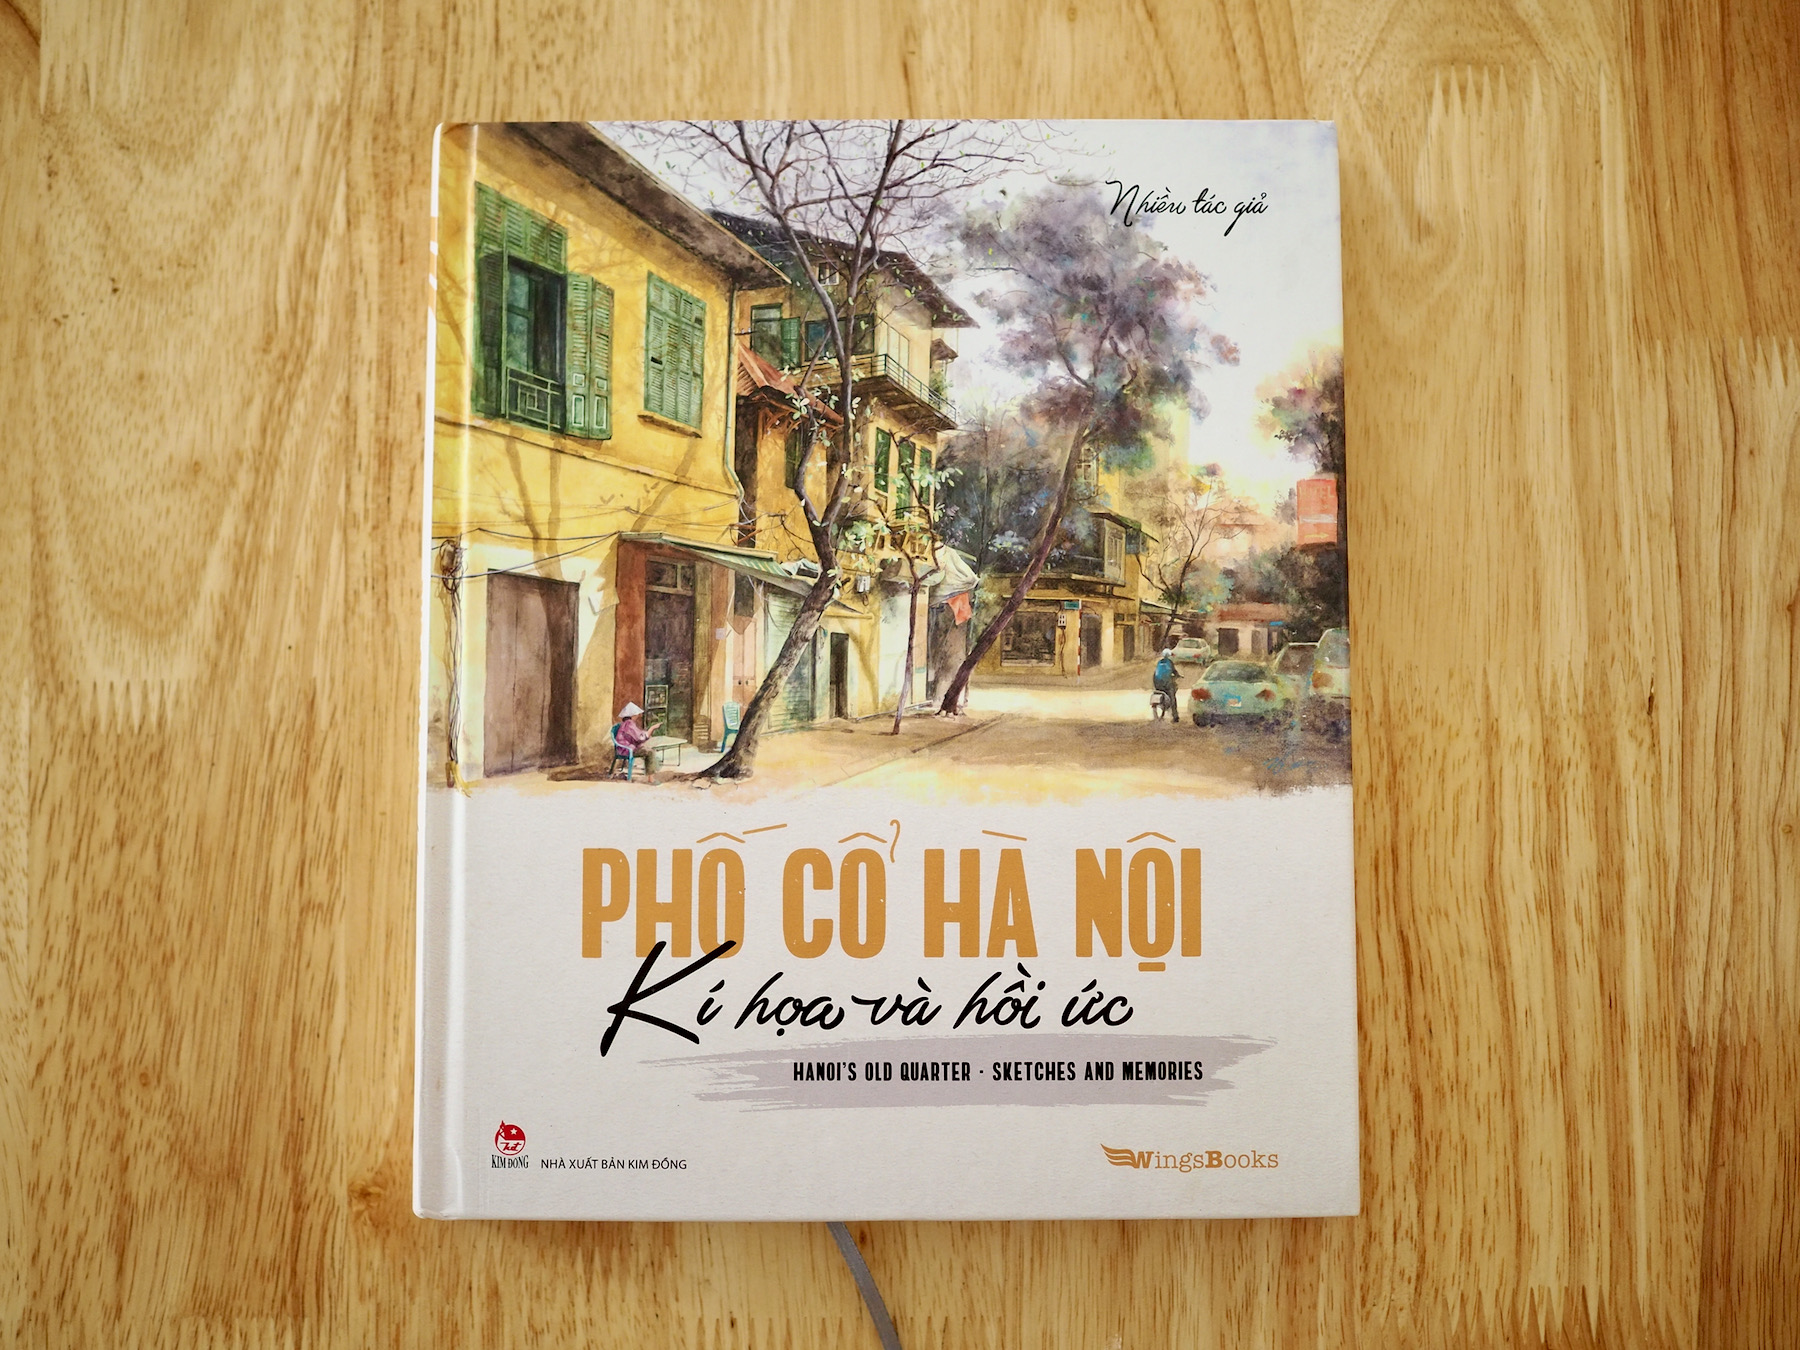 ハノイ旧市街を描いたイラスト集「Phố Cổ Hà Nội」 – ベトナム起業日記